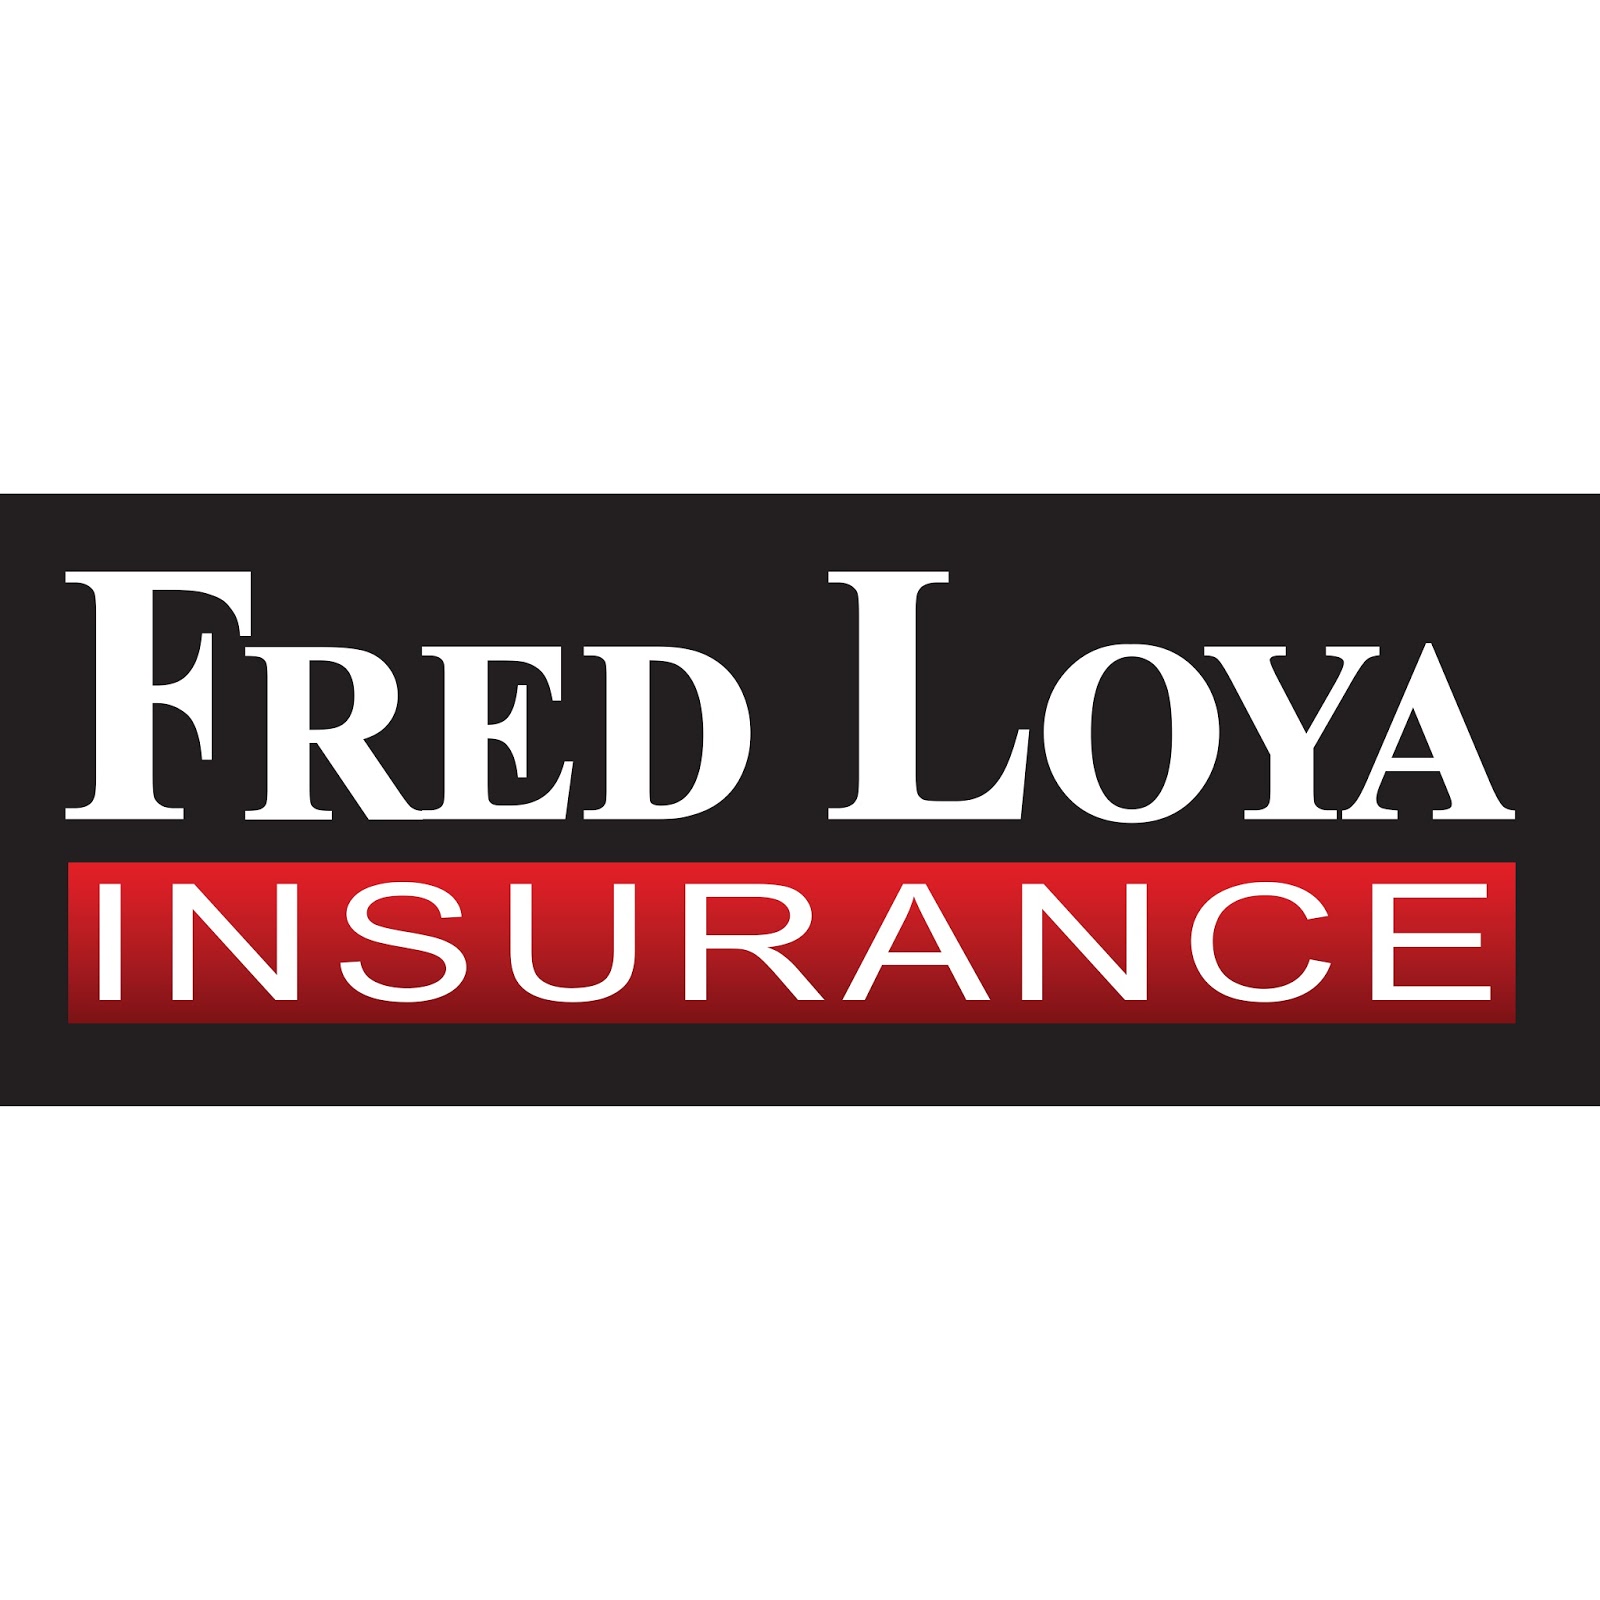 Fred loya insurance abilene tx